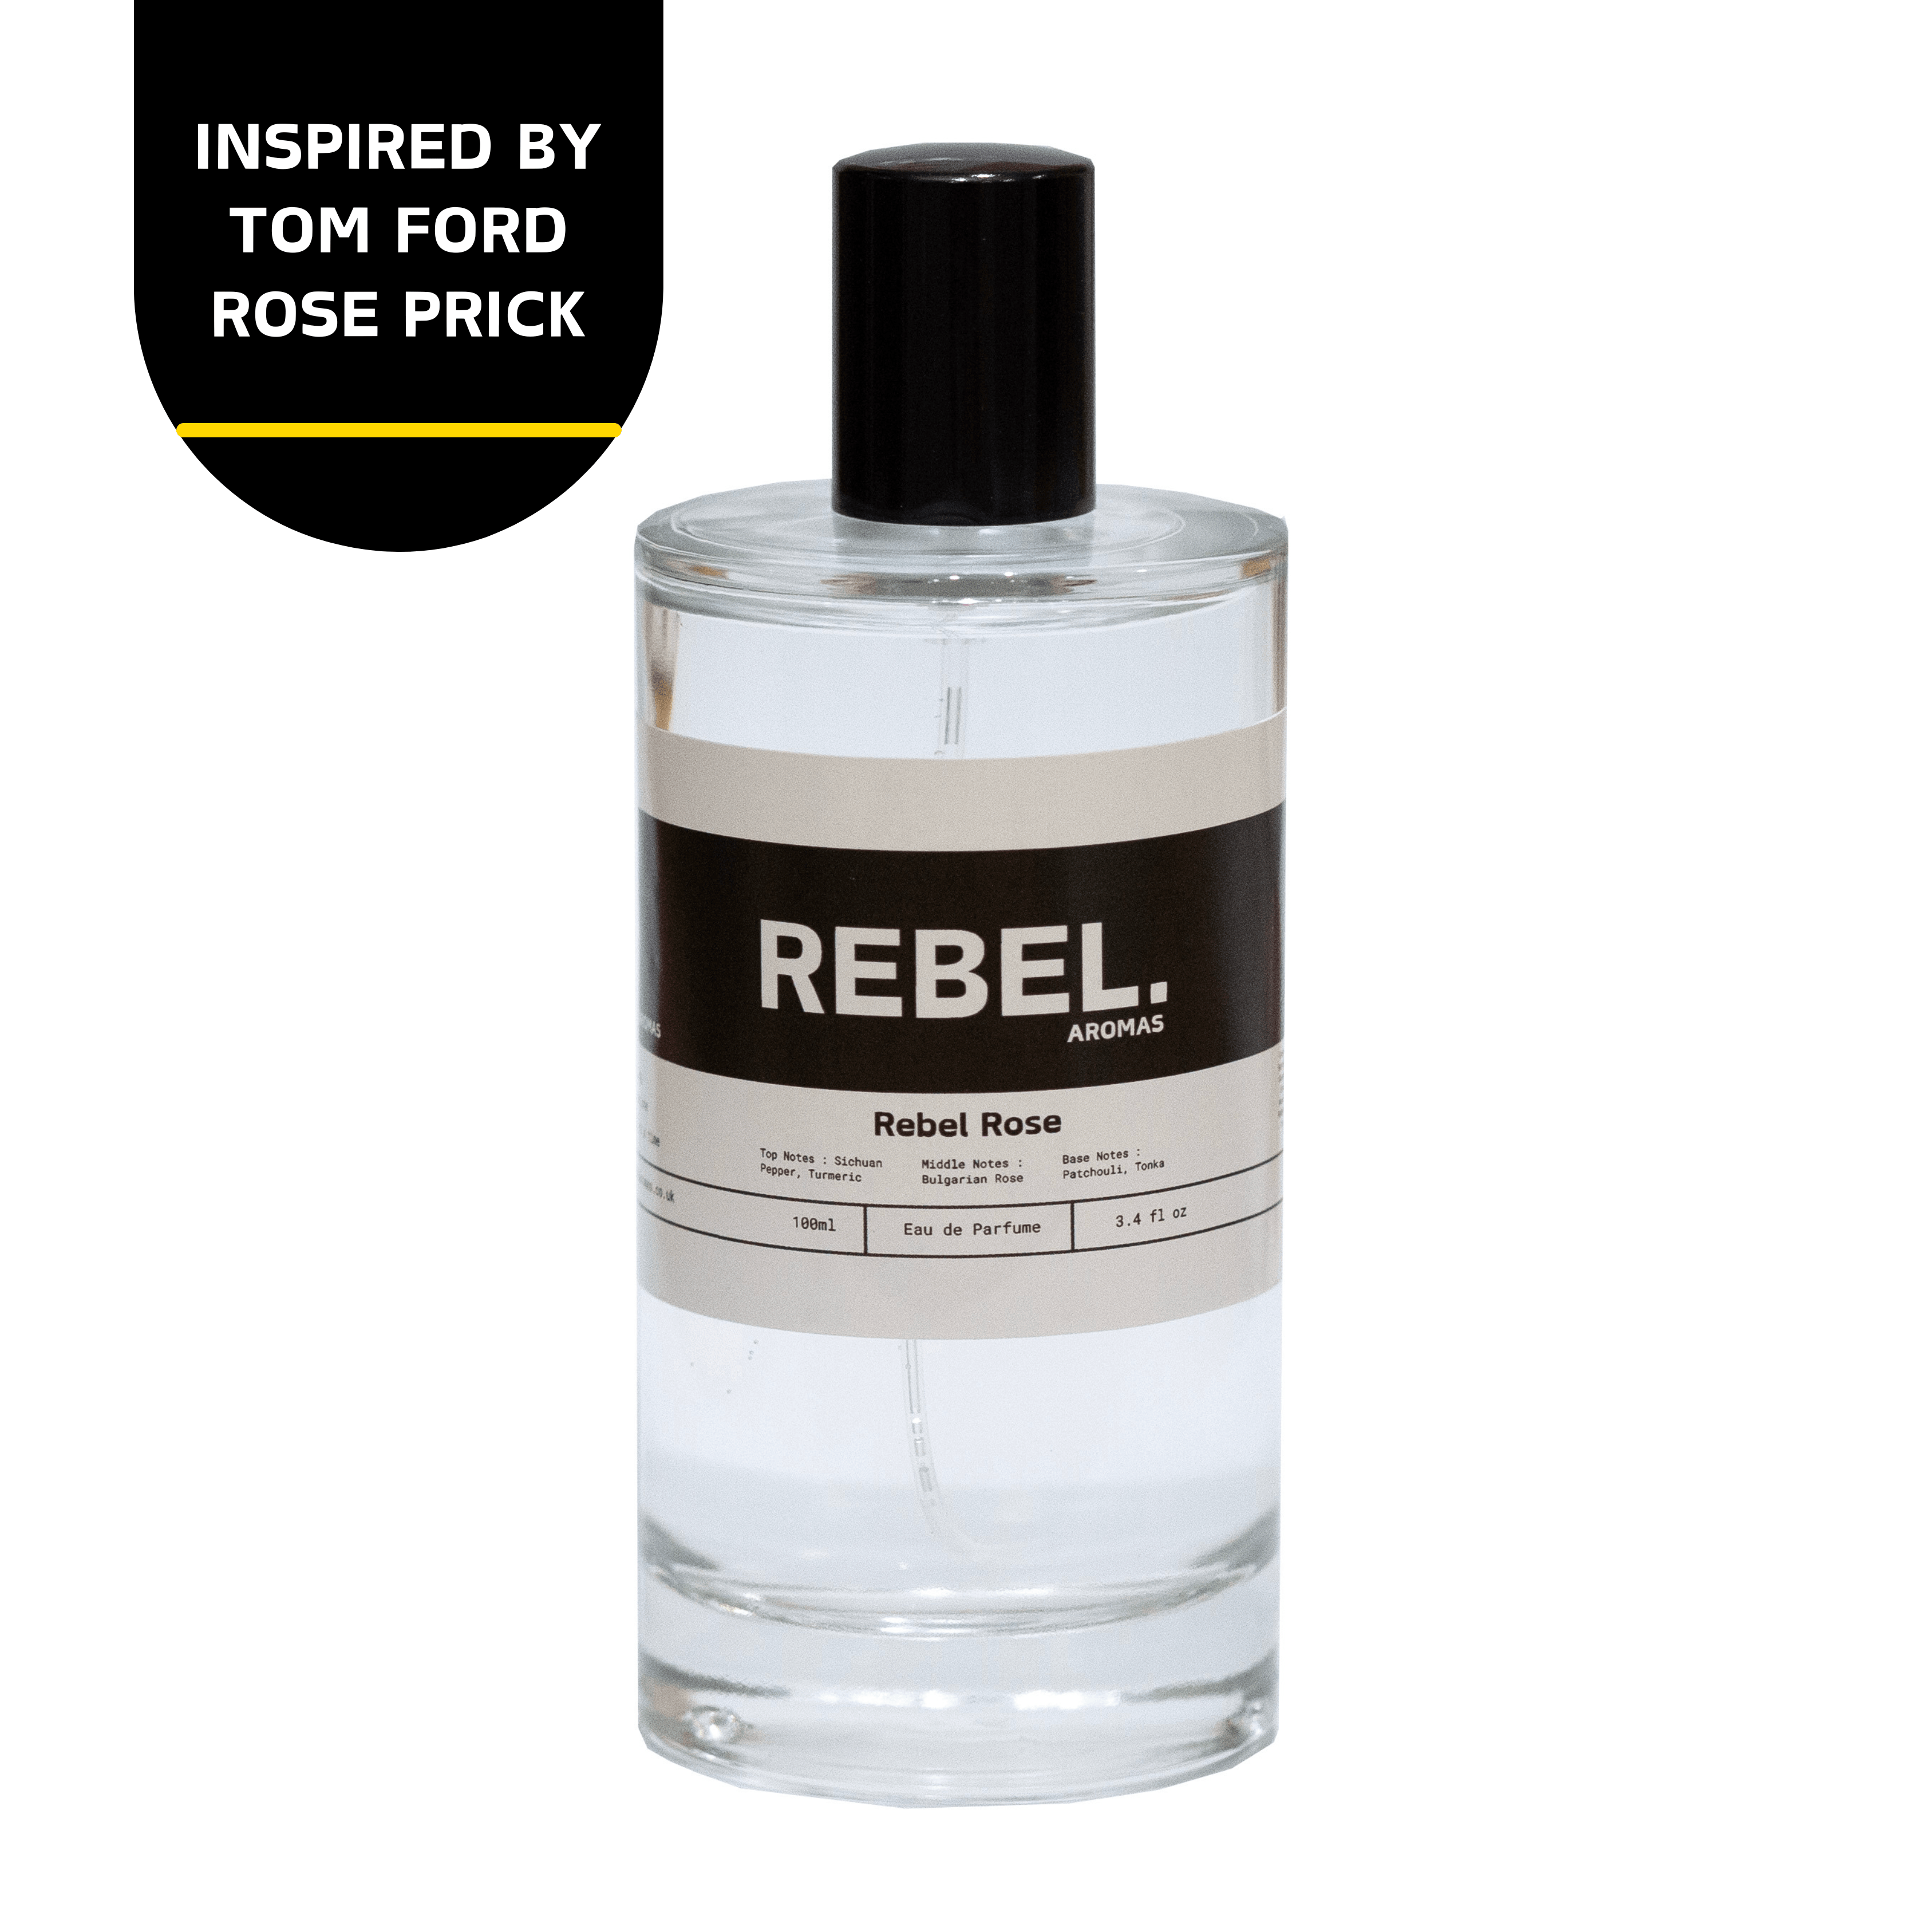 Rebel Rose - Rebel Aromas